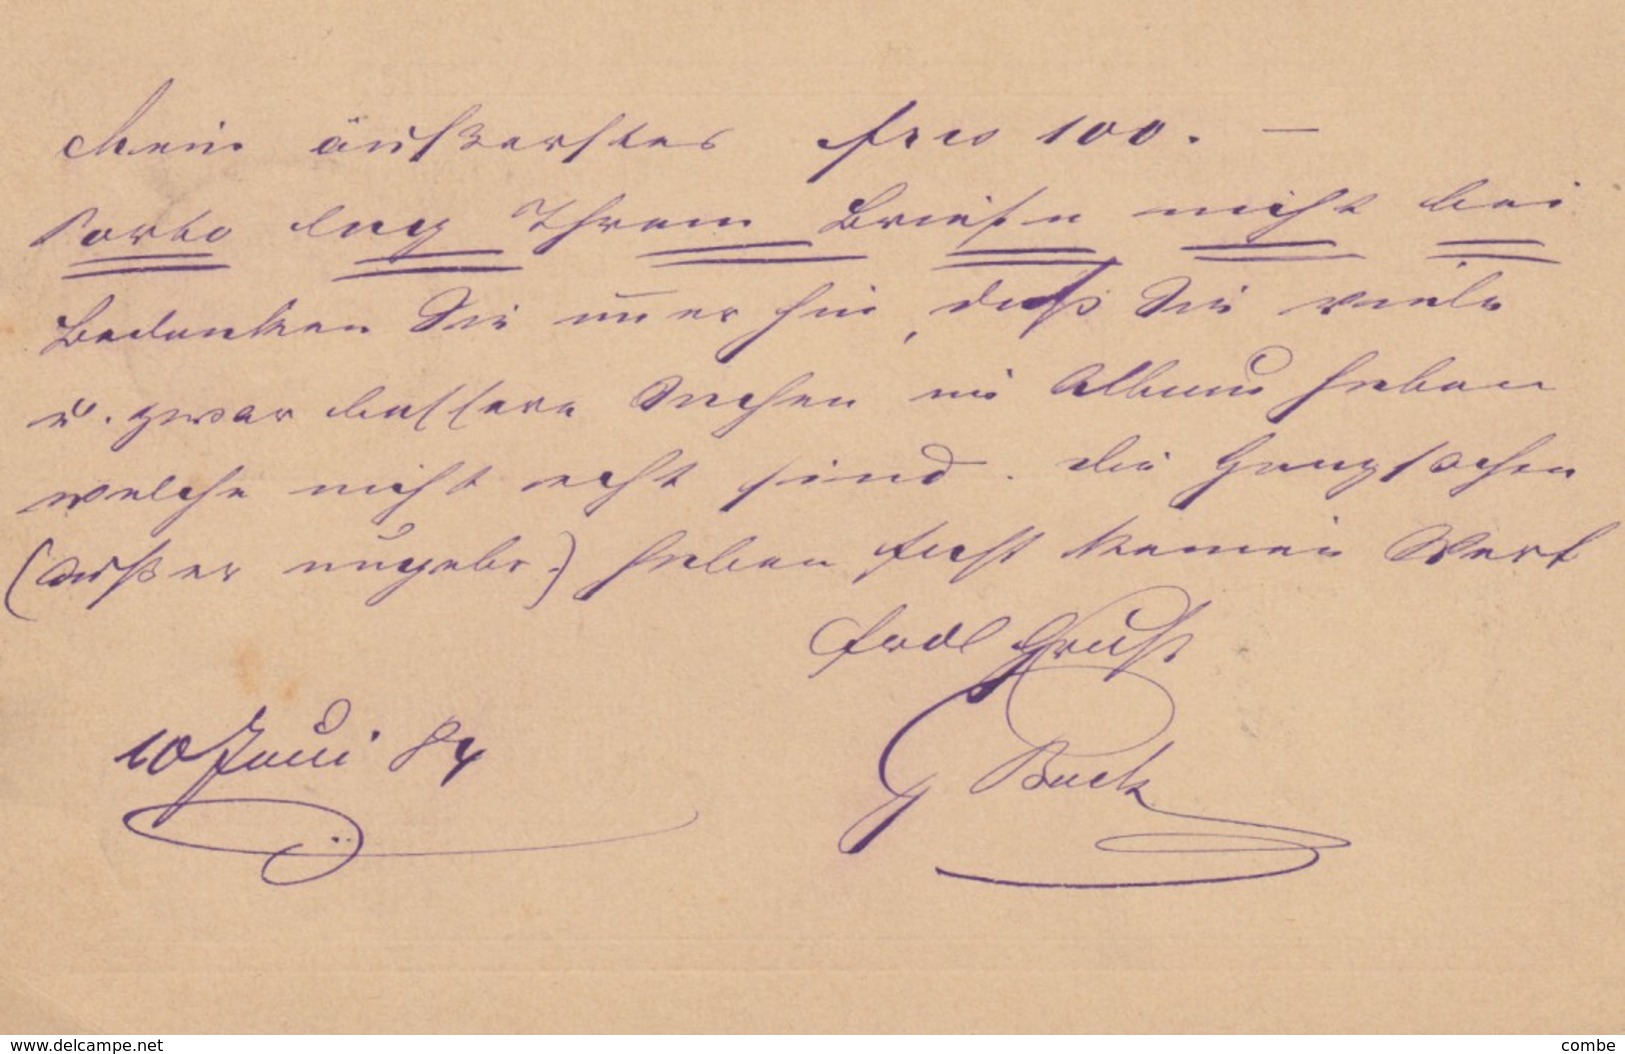 CARTE. 11 JUN 1884. BAHNPOST ULM GEORG LUCK POUR ESCH-SUR-ALZETTE LUXEMBOURG. - Lettres & Documents